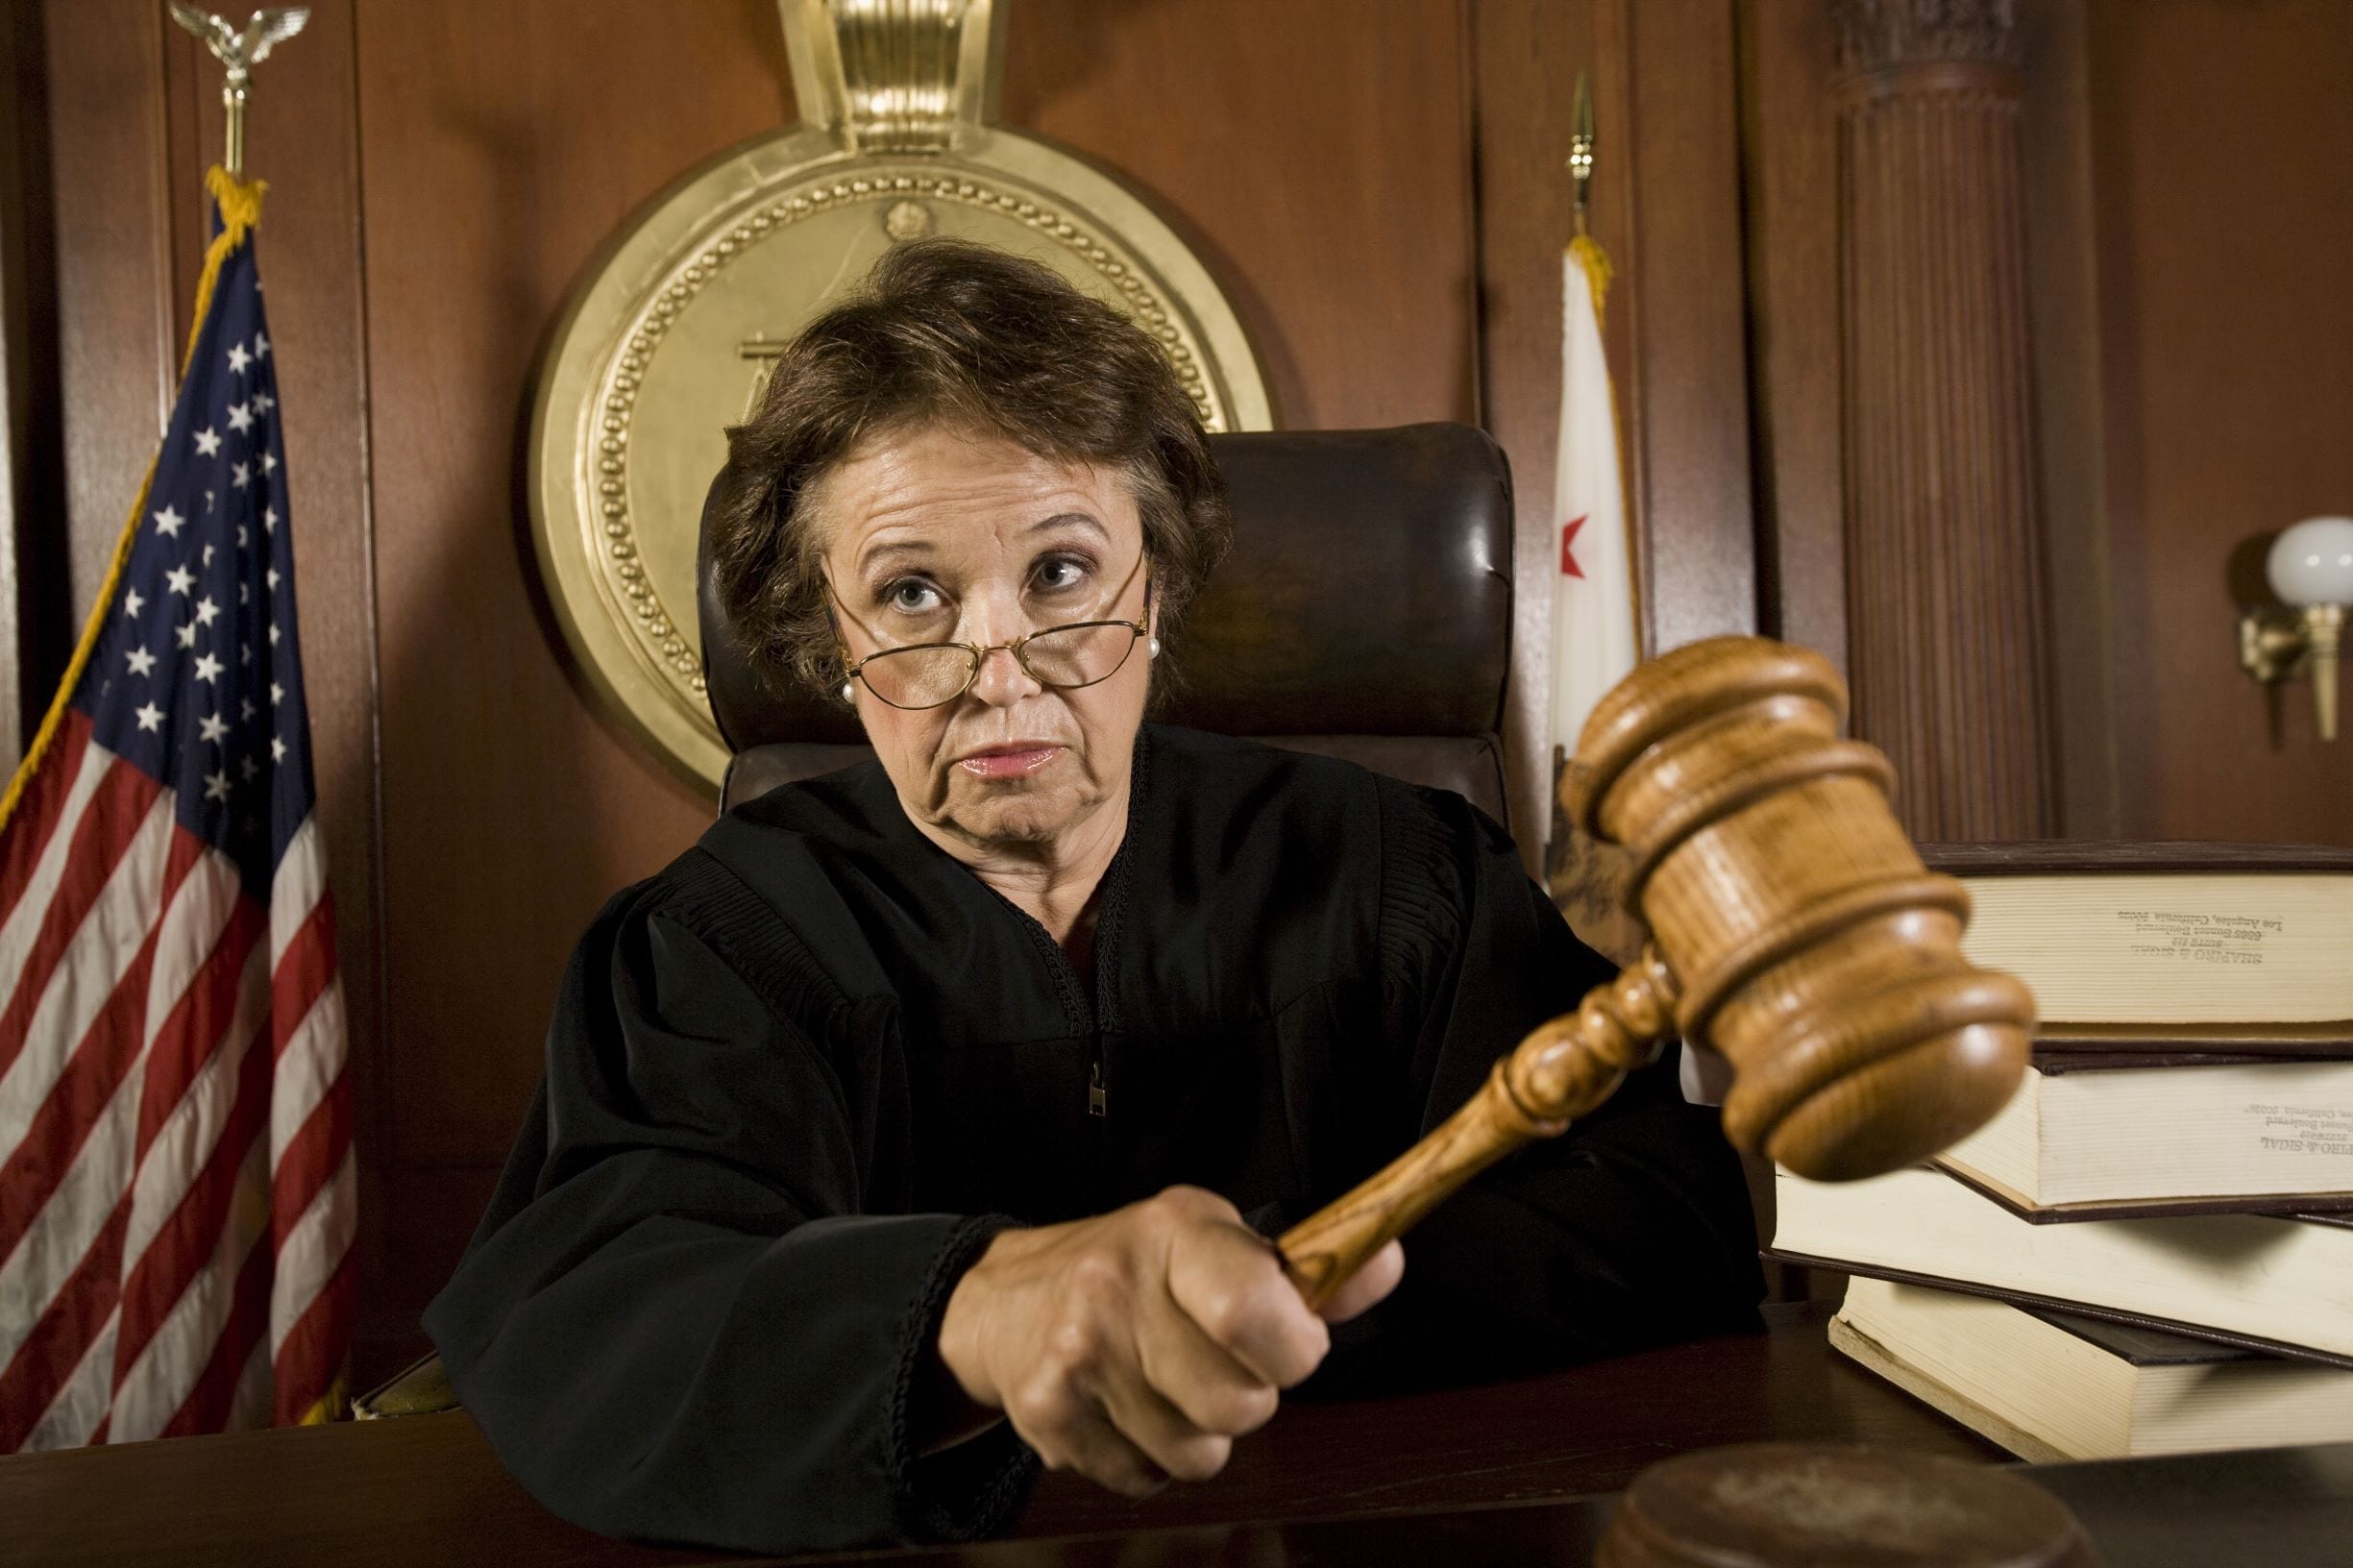 legal counsel là gì